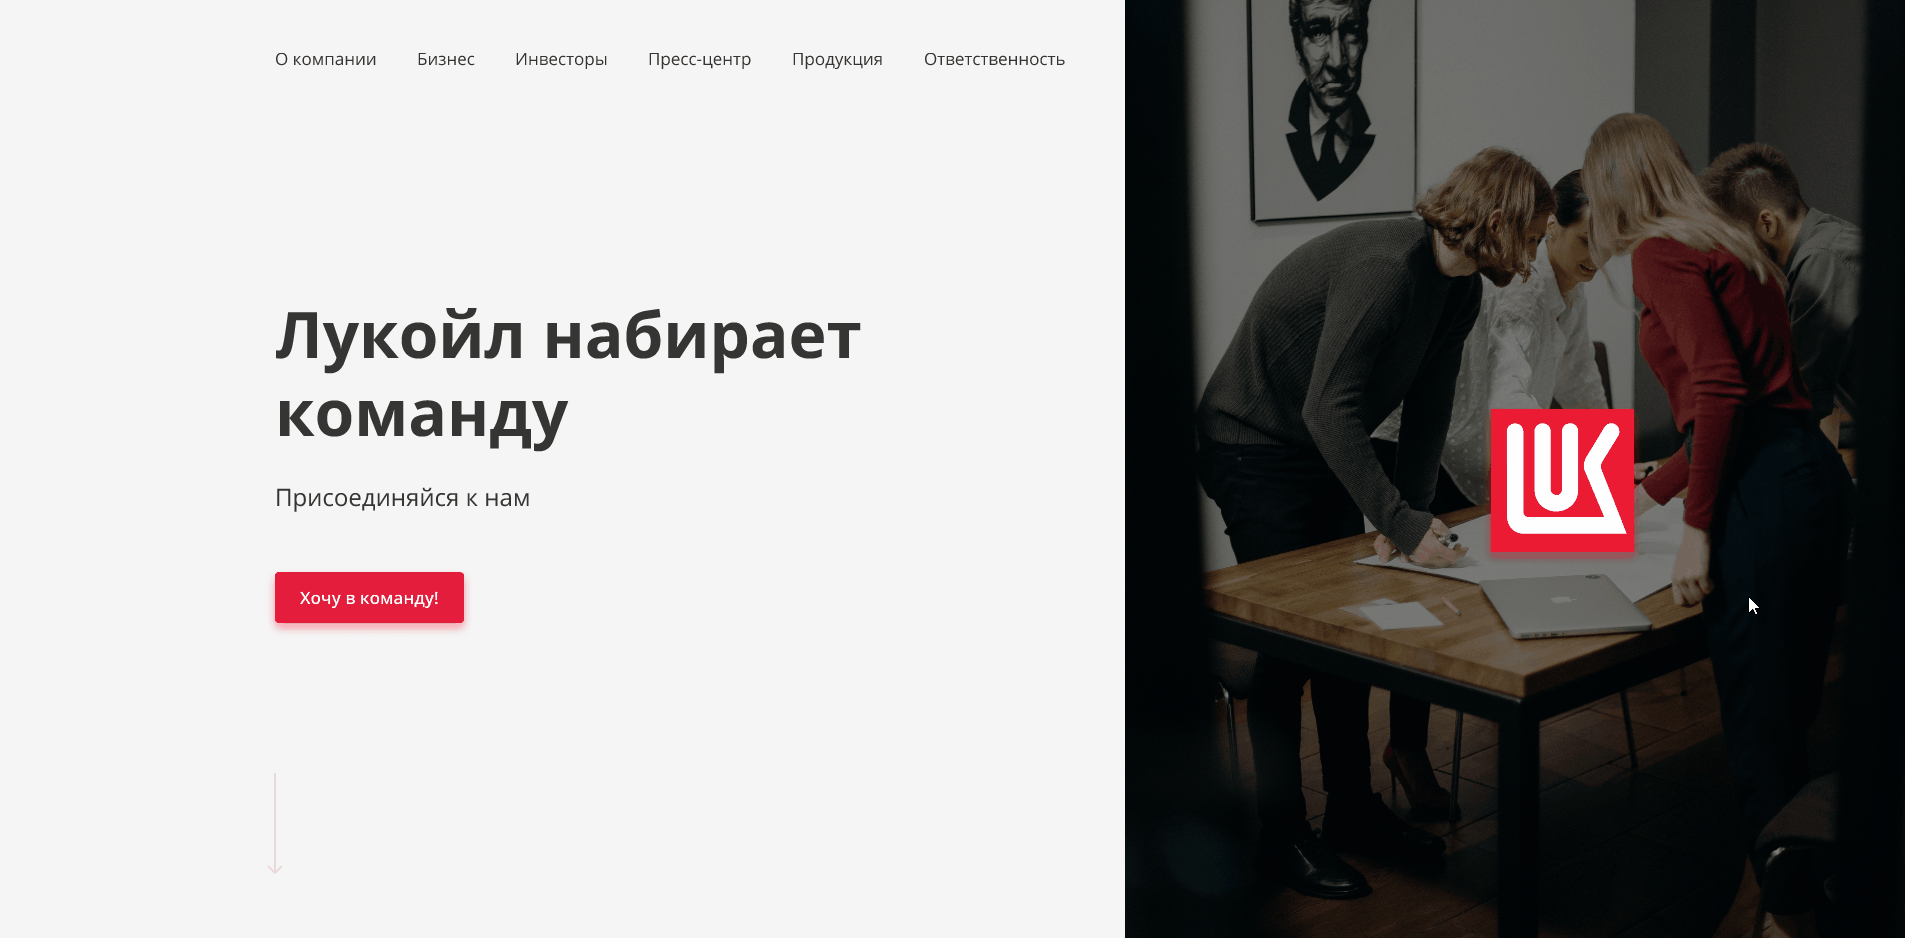 Редизайн сайта с вакансиями нефтяной компании "Лукойл" 9